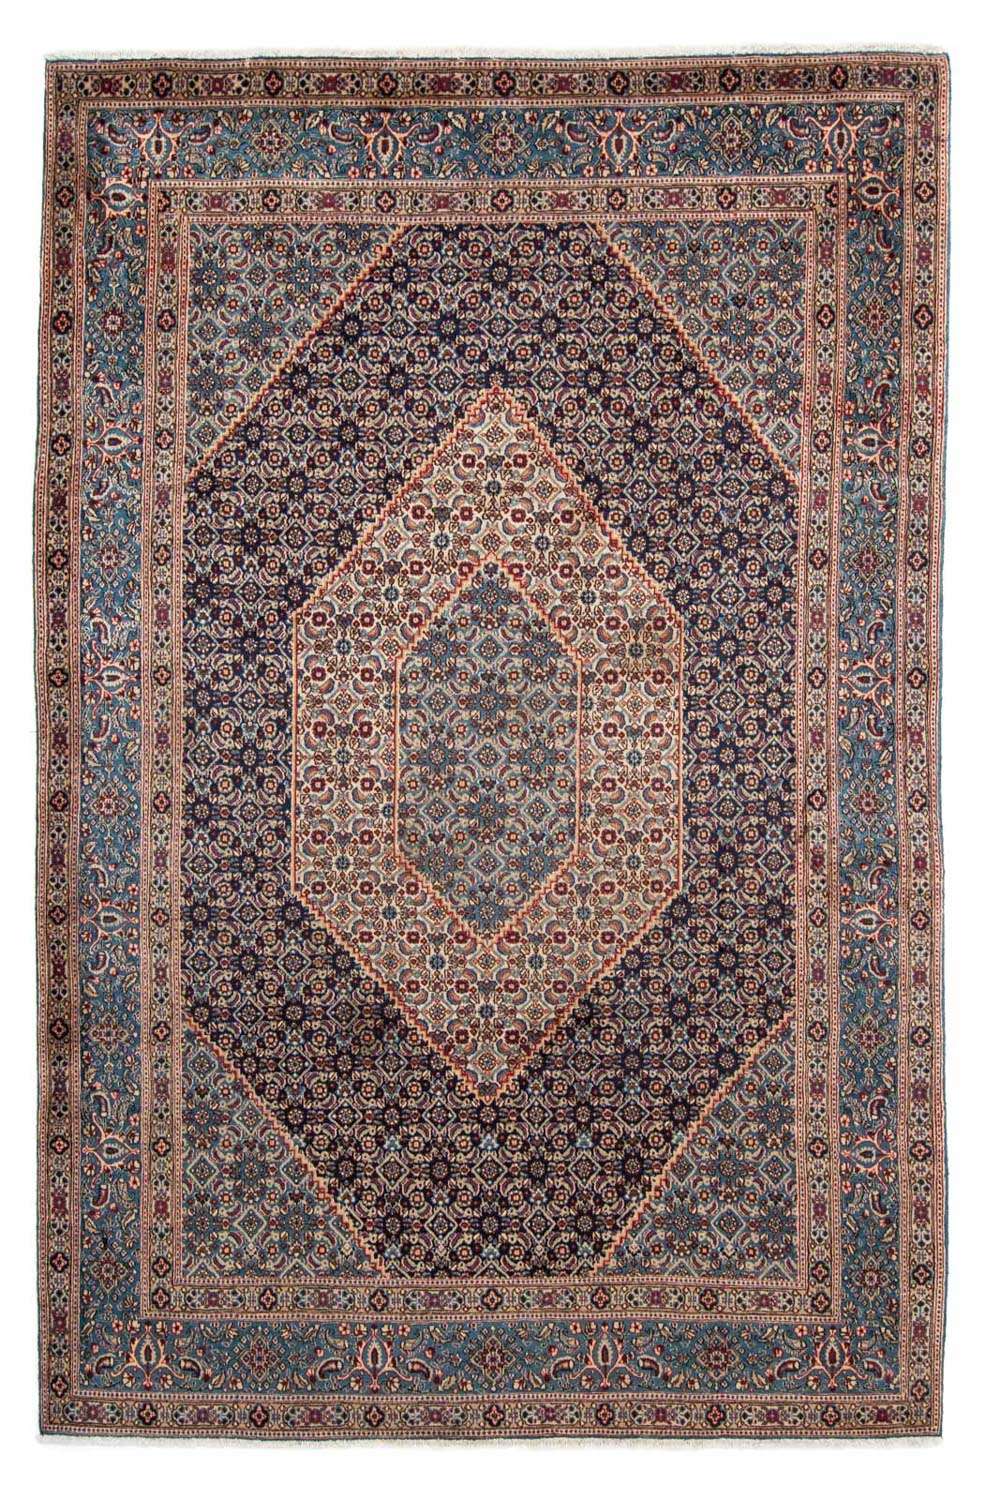 Tapis persan - Classique - 305 x 208 cm - bleu foncé